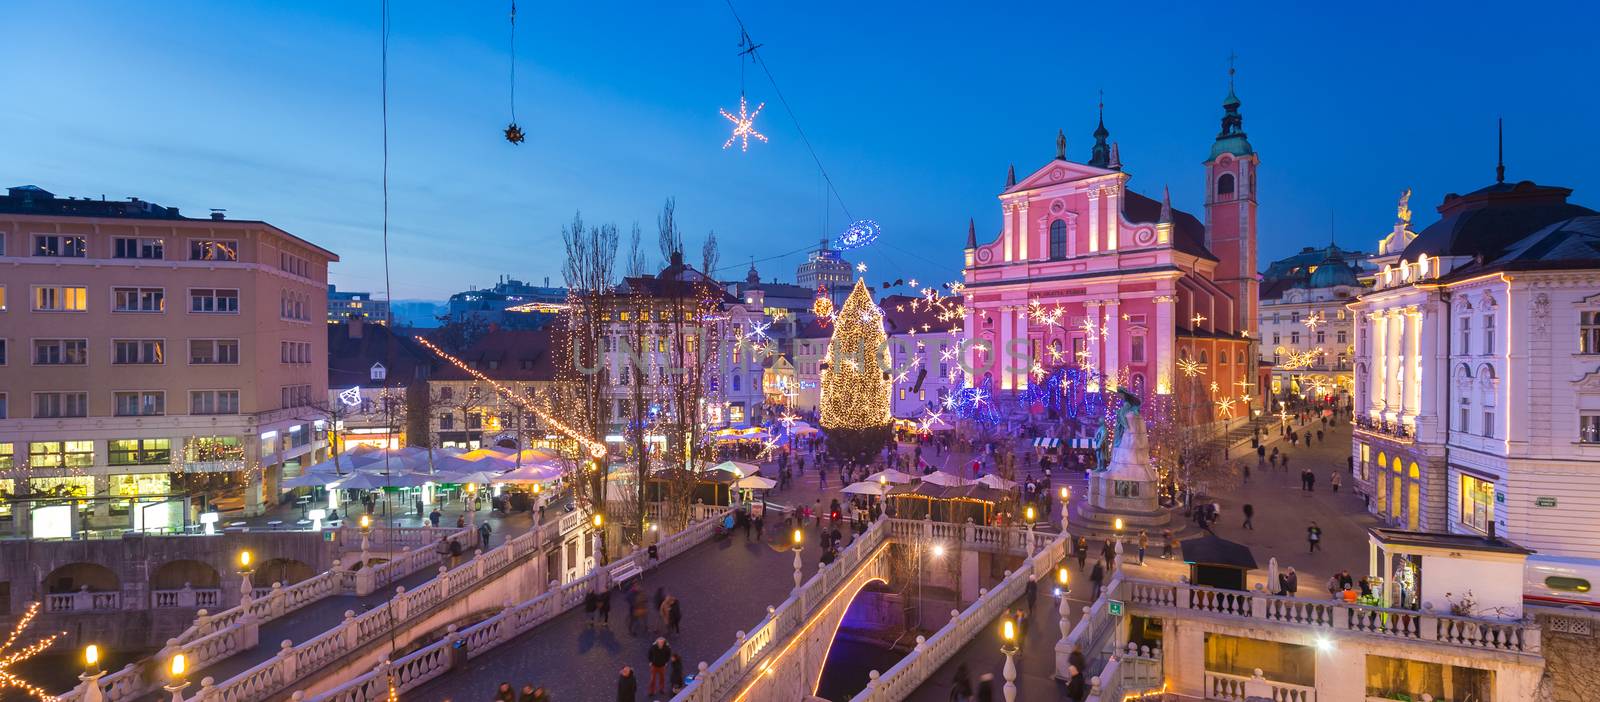 Ljubljana in  Christmas time, Slovenia. by kasto